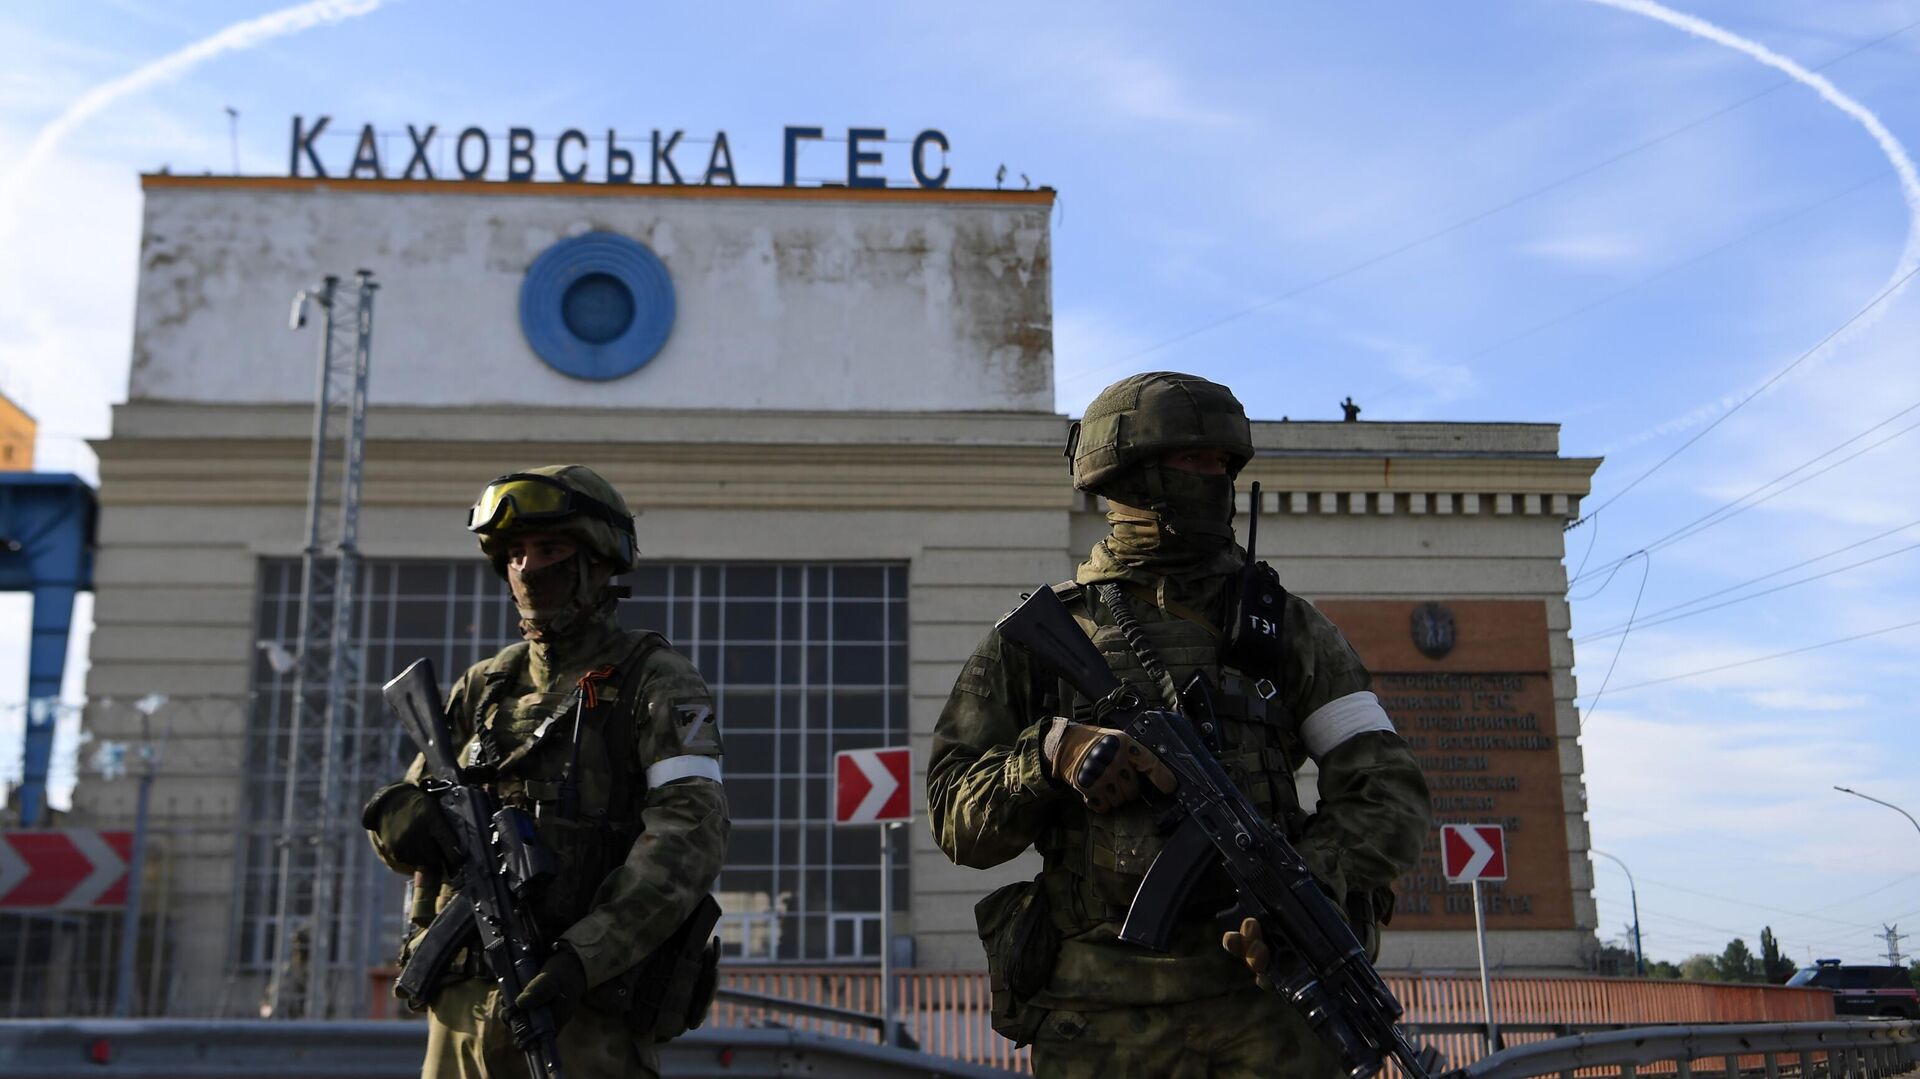 Военнослужащие РФ возле здания Каховской ГЭС - РИА Новости, 1920, 09.09.2022